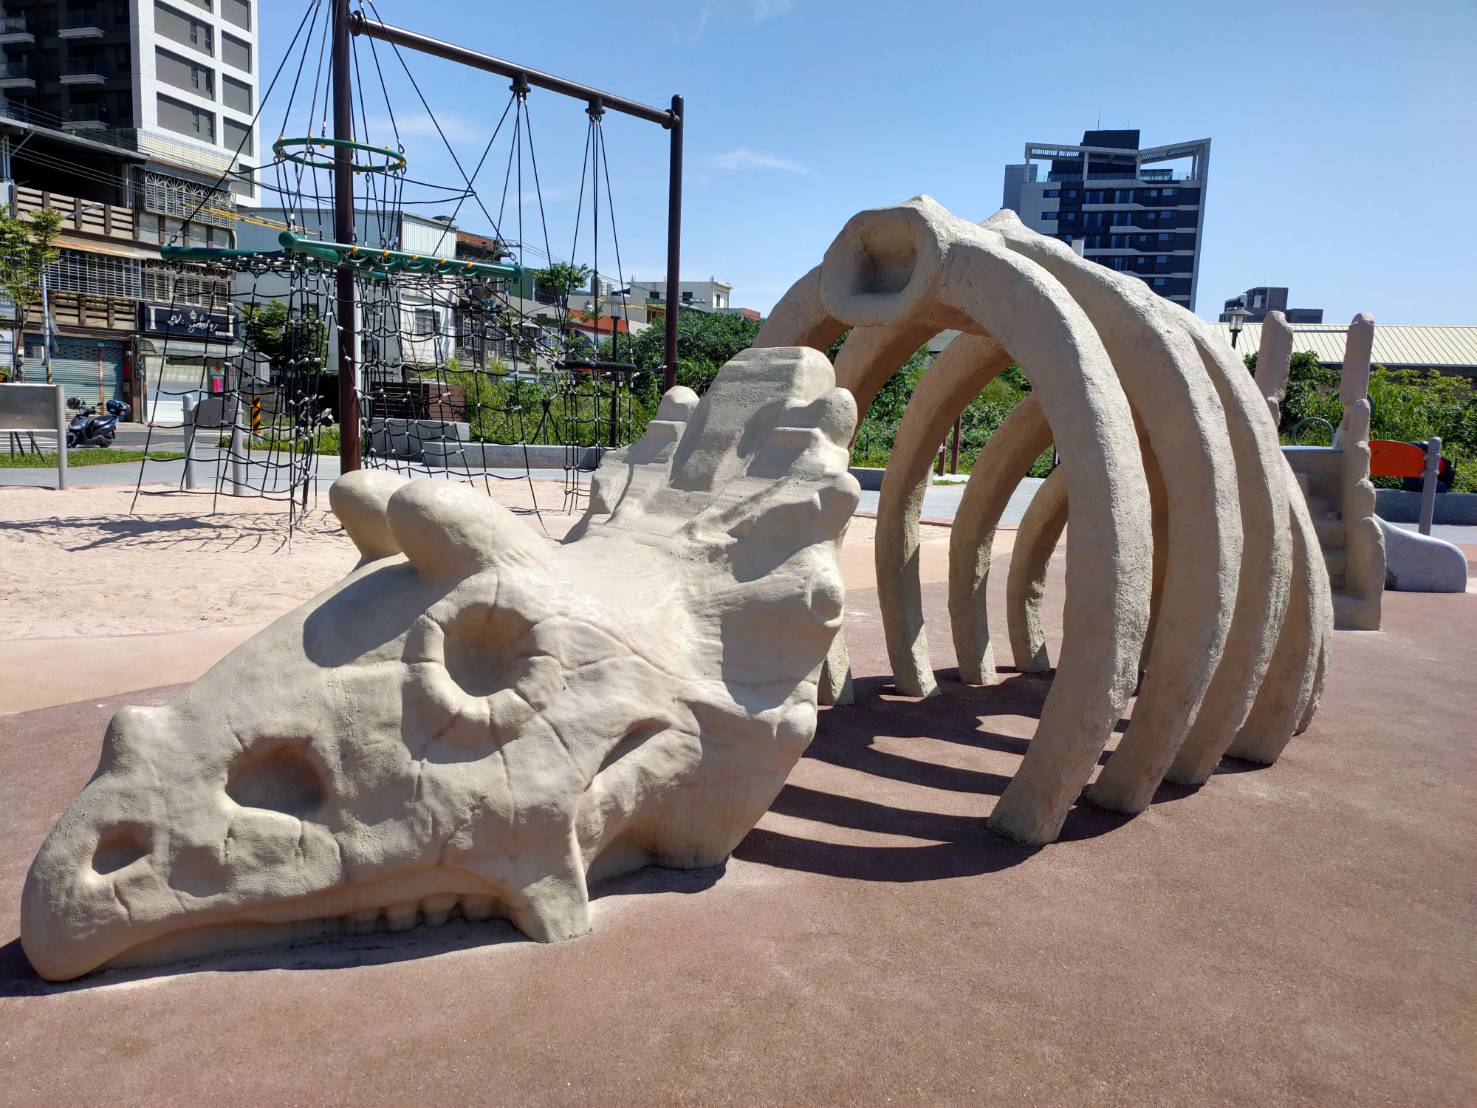 逗逗龍公園將恐龍意象及造型設施融入遊戲場中